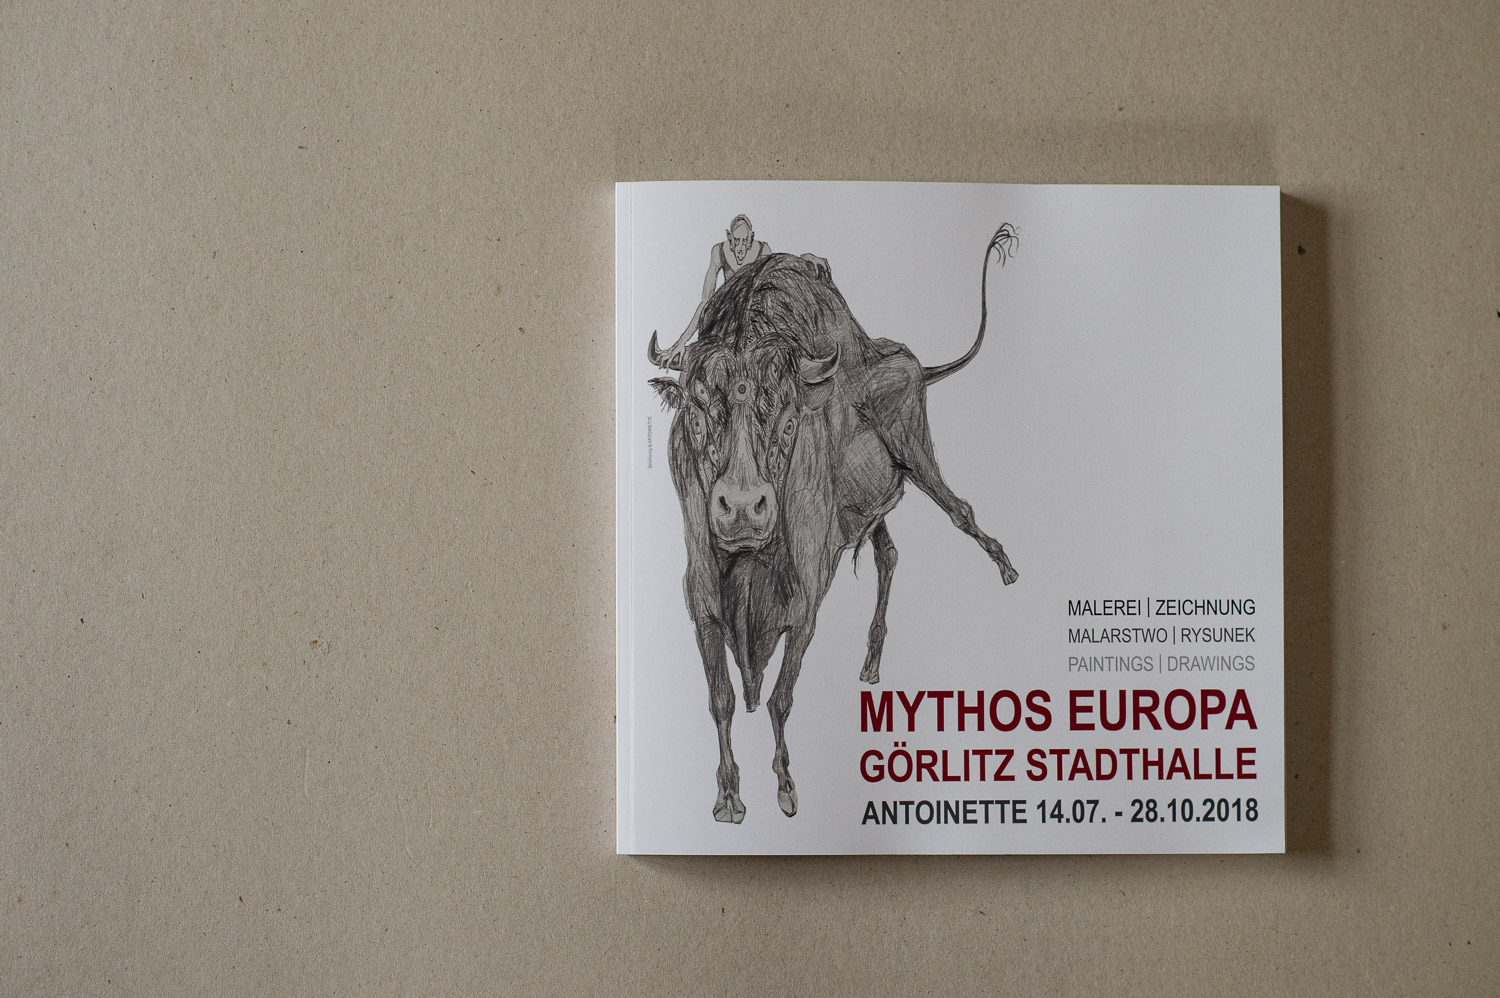  Goerlitz, 12.11.2018. 
Mythos Europa, Ausstellungskatalog.
//Foto: Pawel Sosnowski www.pawelsosnowski.com 